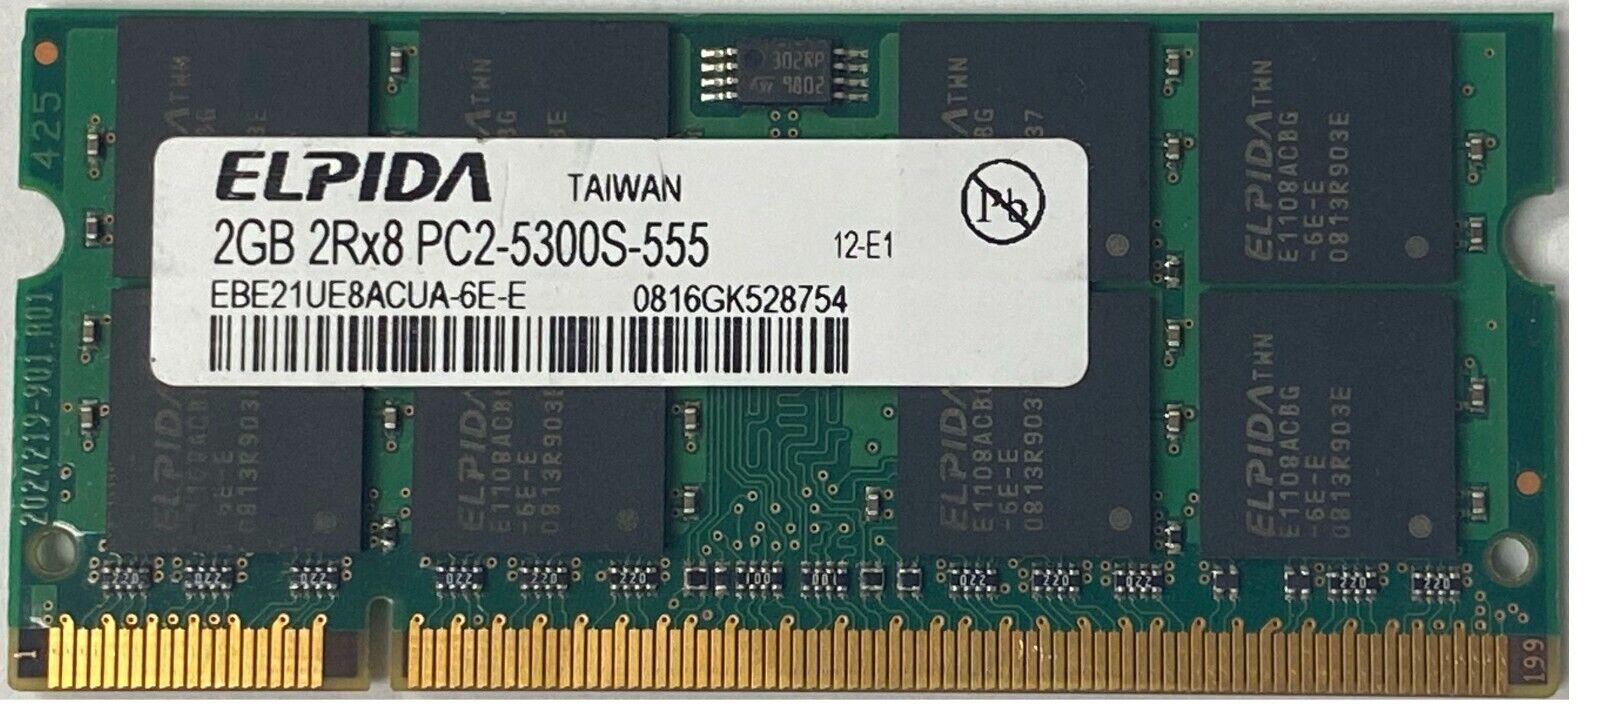 Elpida 2GB DDR2-667 PC2-5300S SODIMM 2Rx8 1.8V (EBE21UE8ACUA-6E-E)